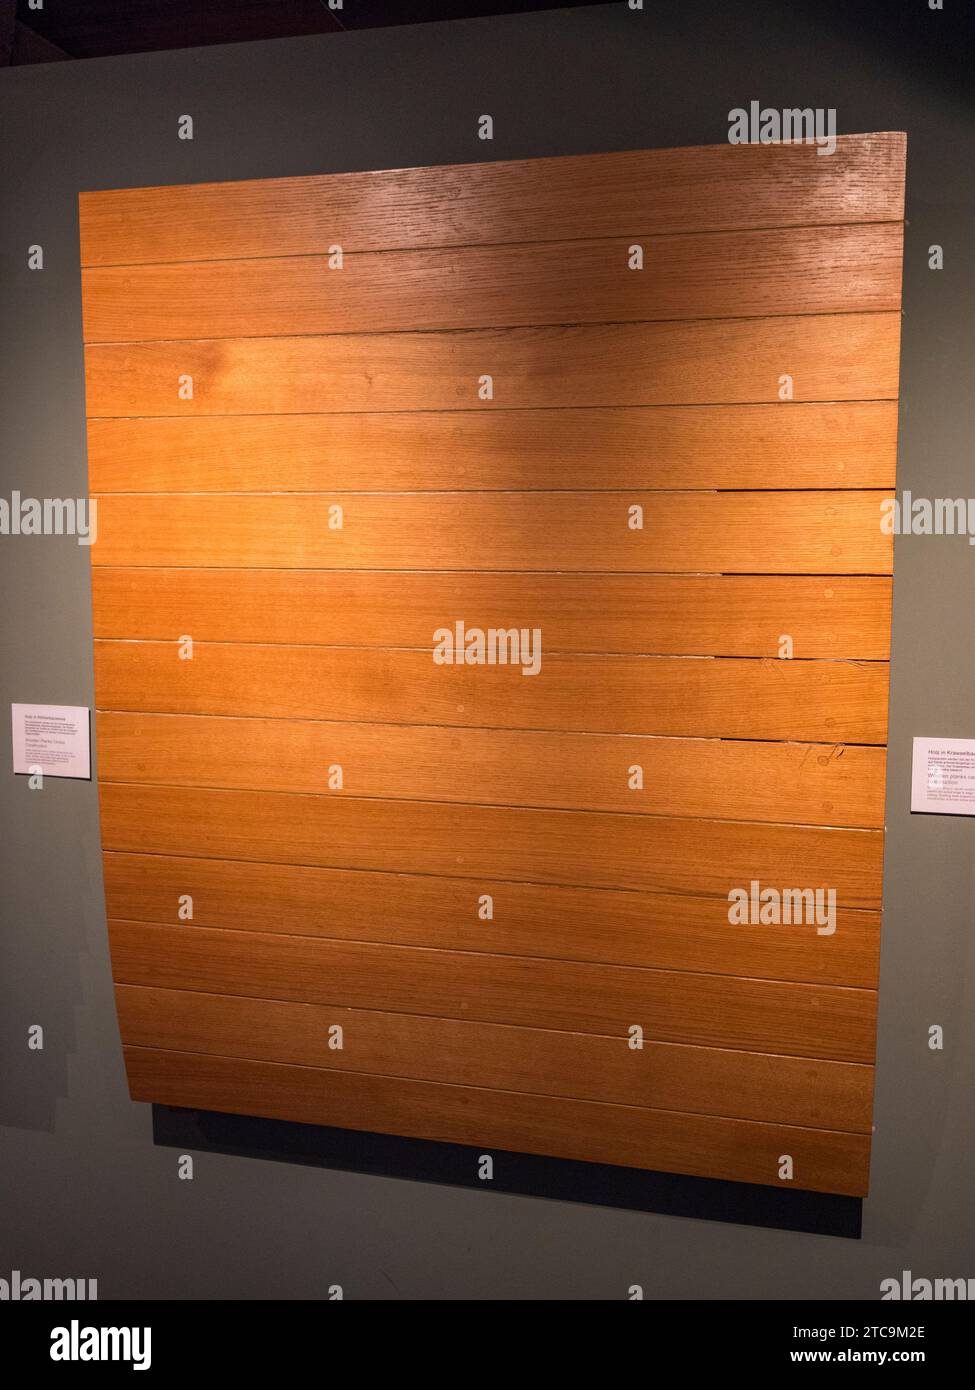 Esempio di tavole di legno costruzione di navi carvel nel Museo marittimo internazionale di HafenCity, Amburgo, Germania. Foto Stock